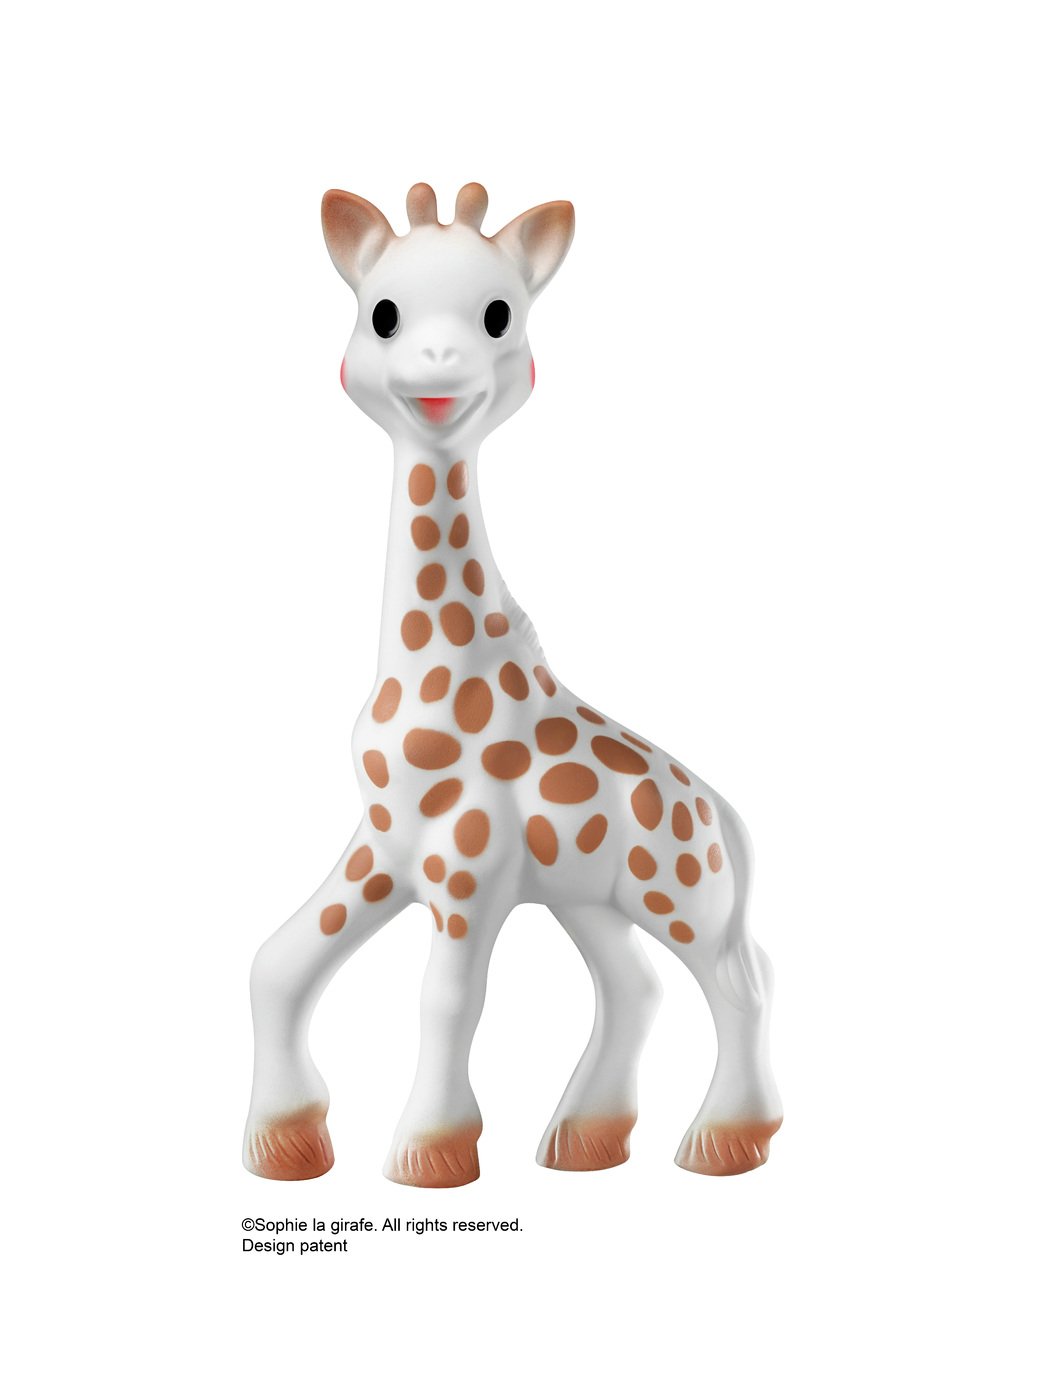 Buy Sophie La Girafe Fresh Touch Gift 